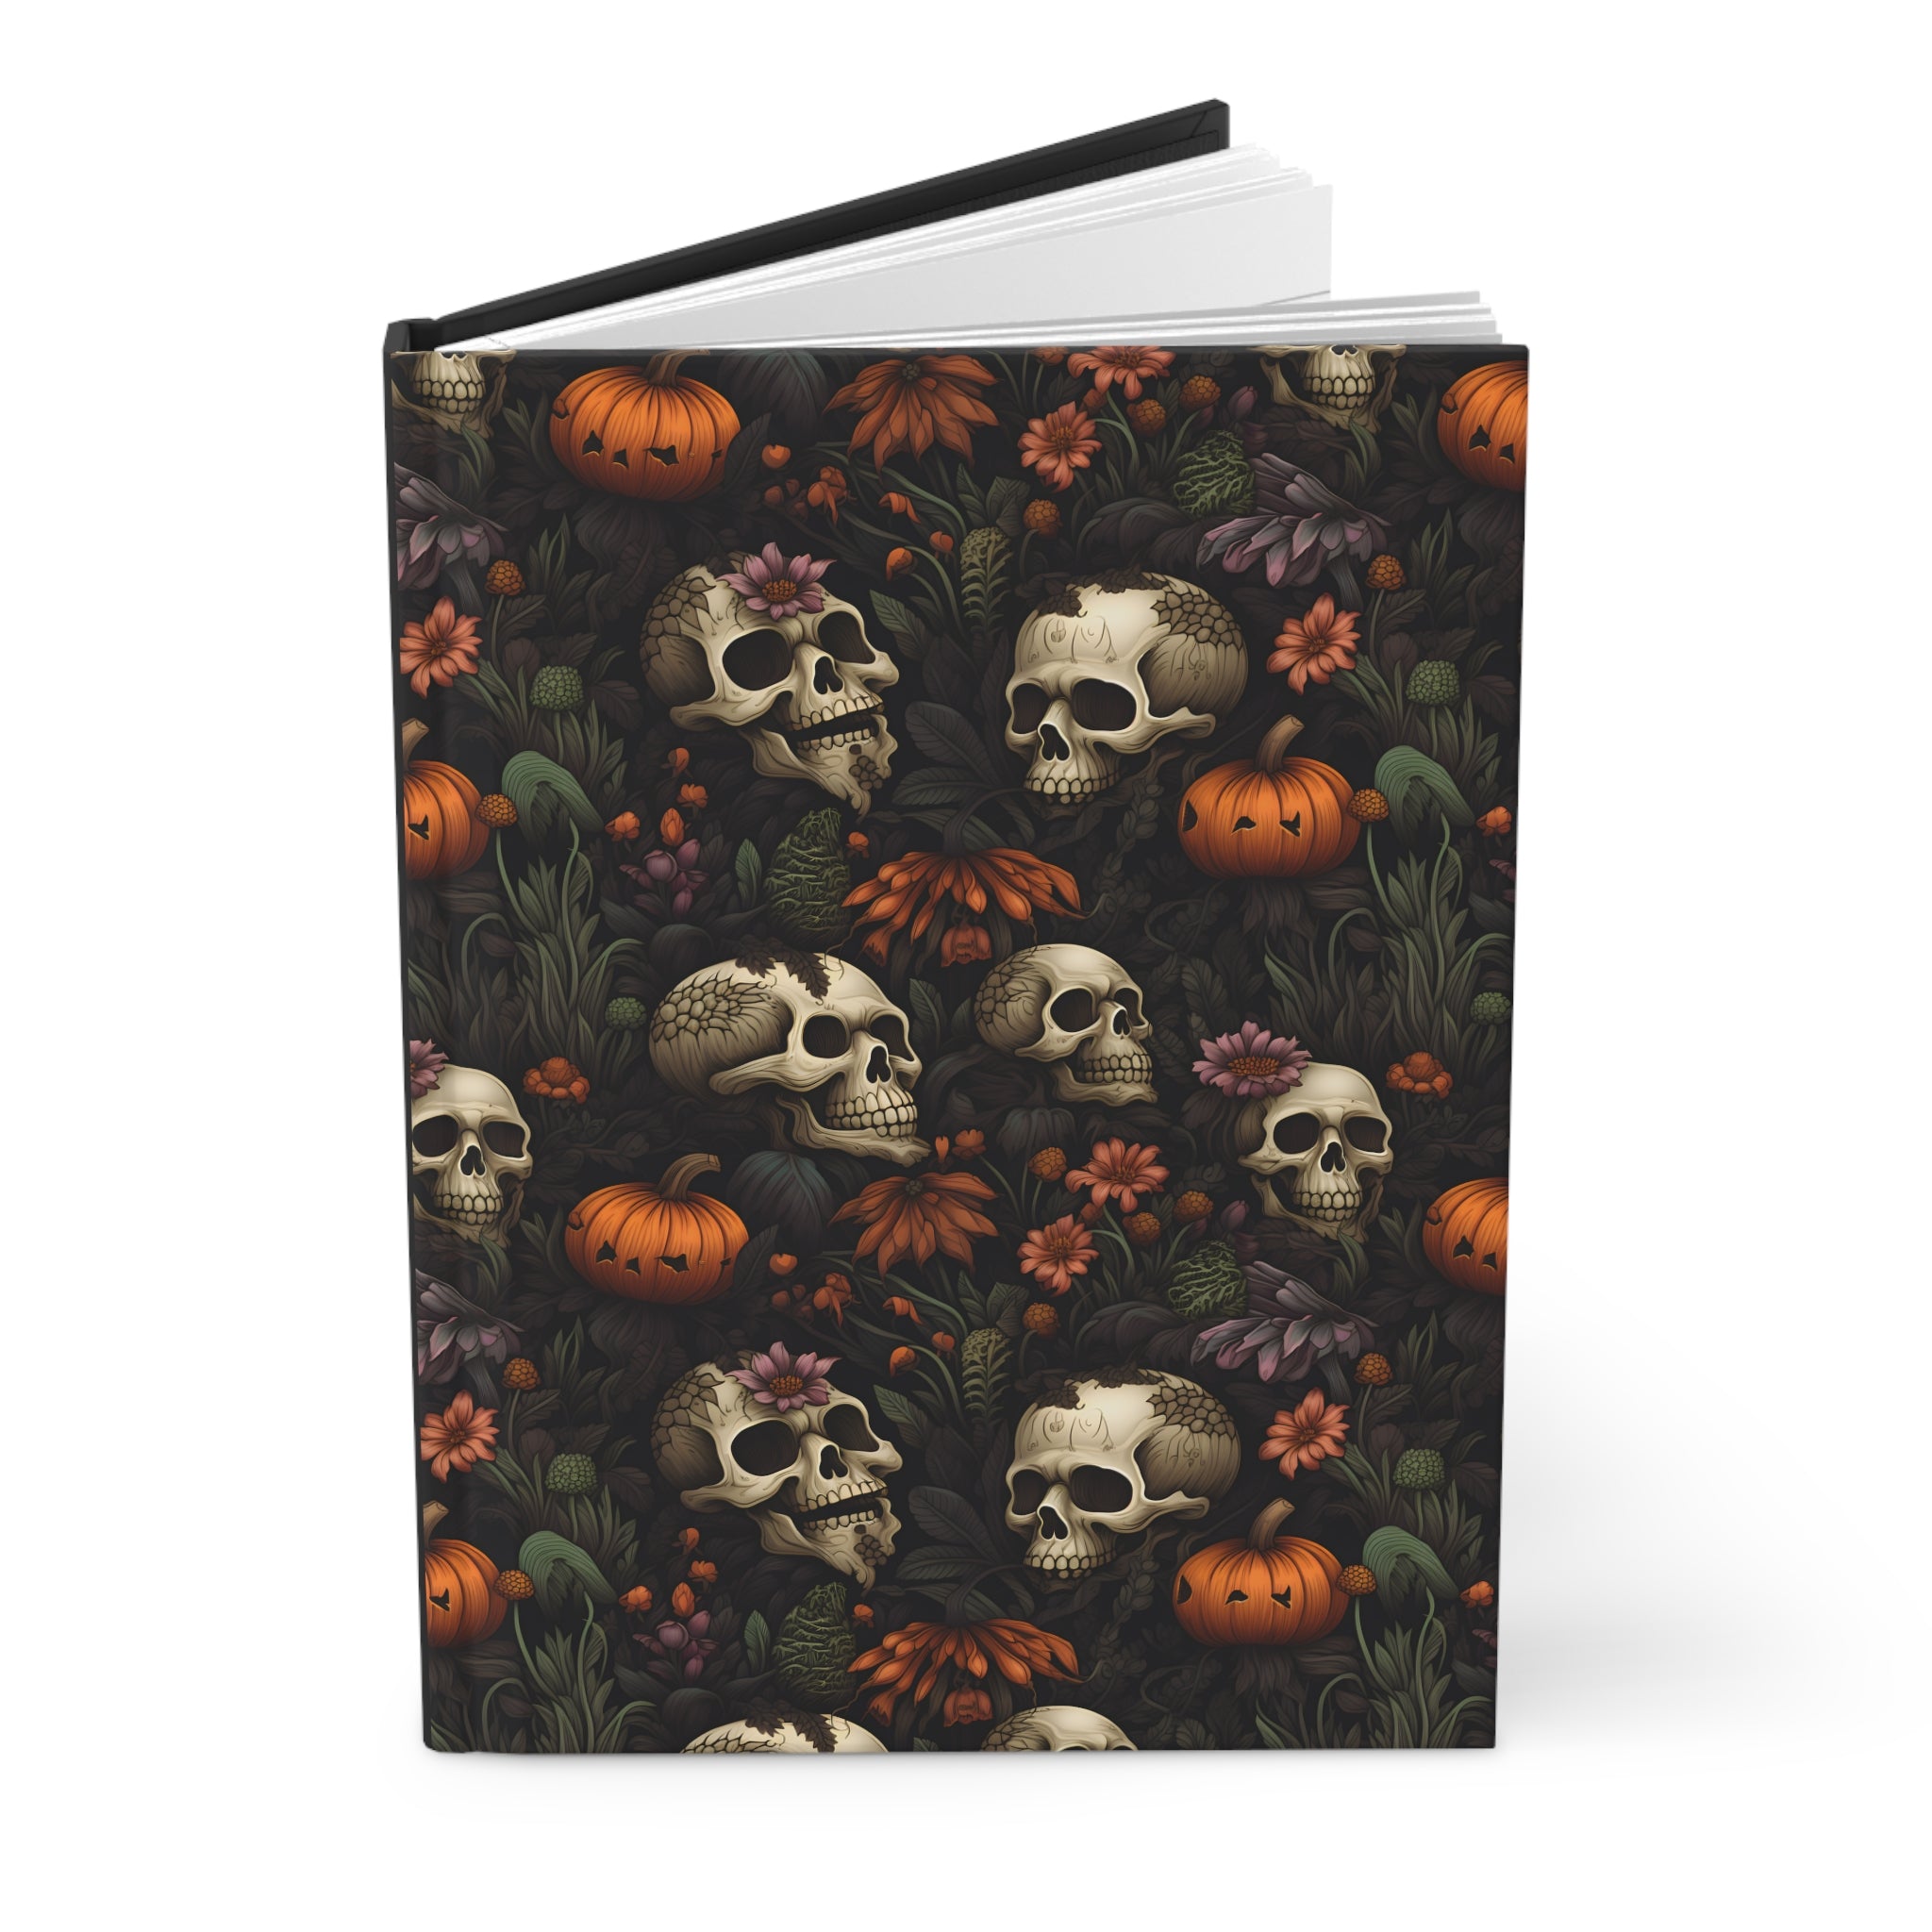 Dead Harvest Skulls: Haunted Garden Lined Journal, 8"x6" Hardcover